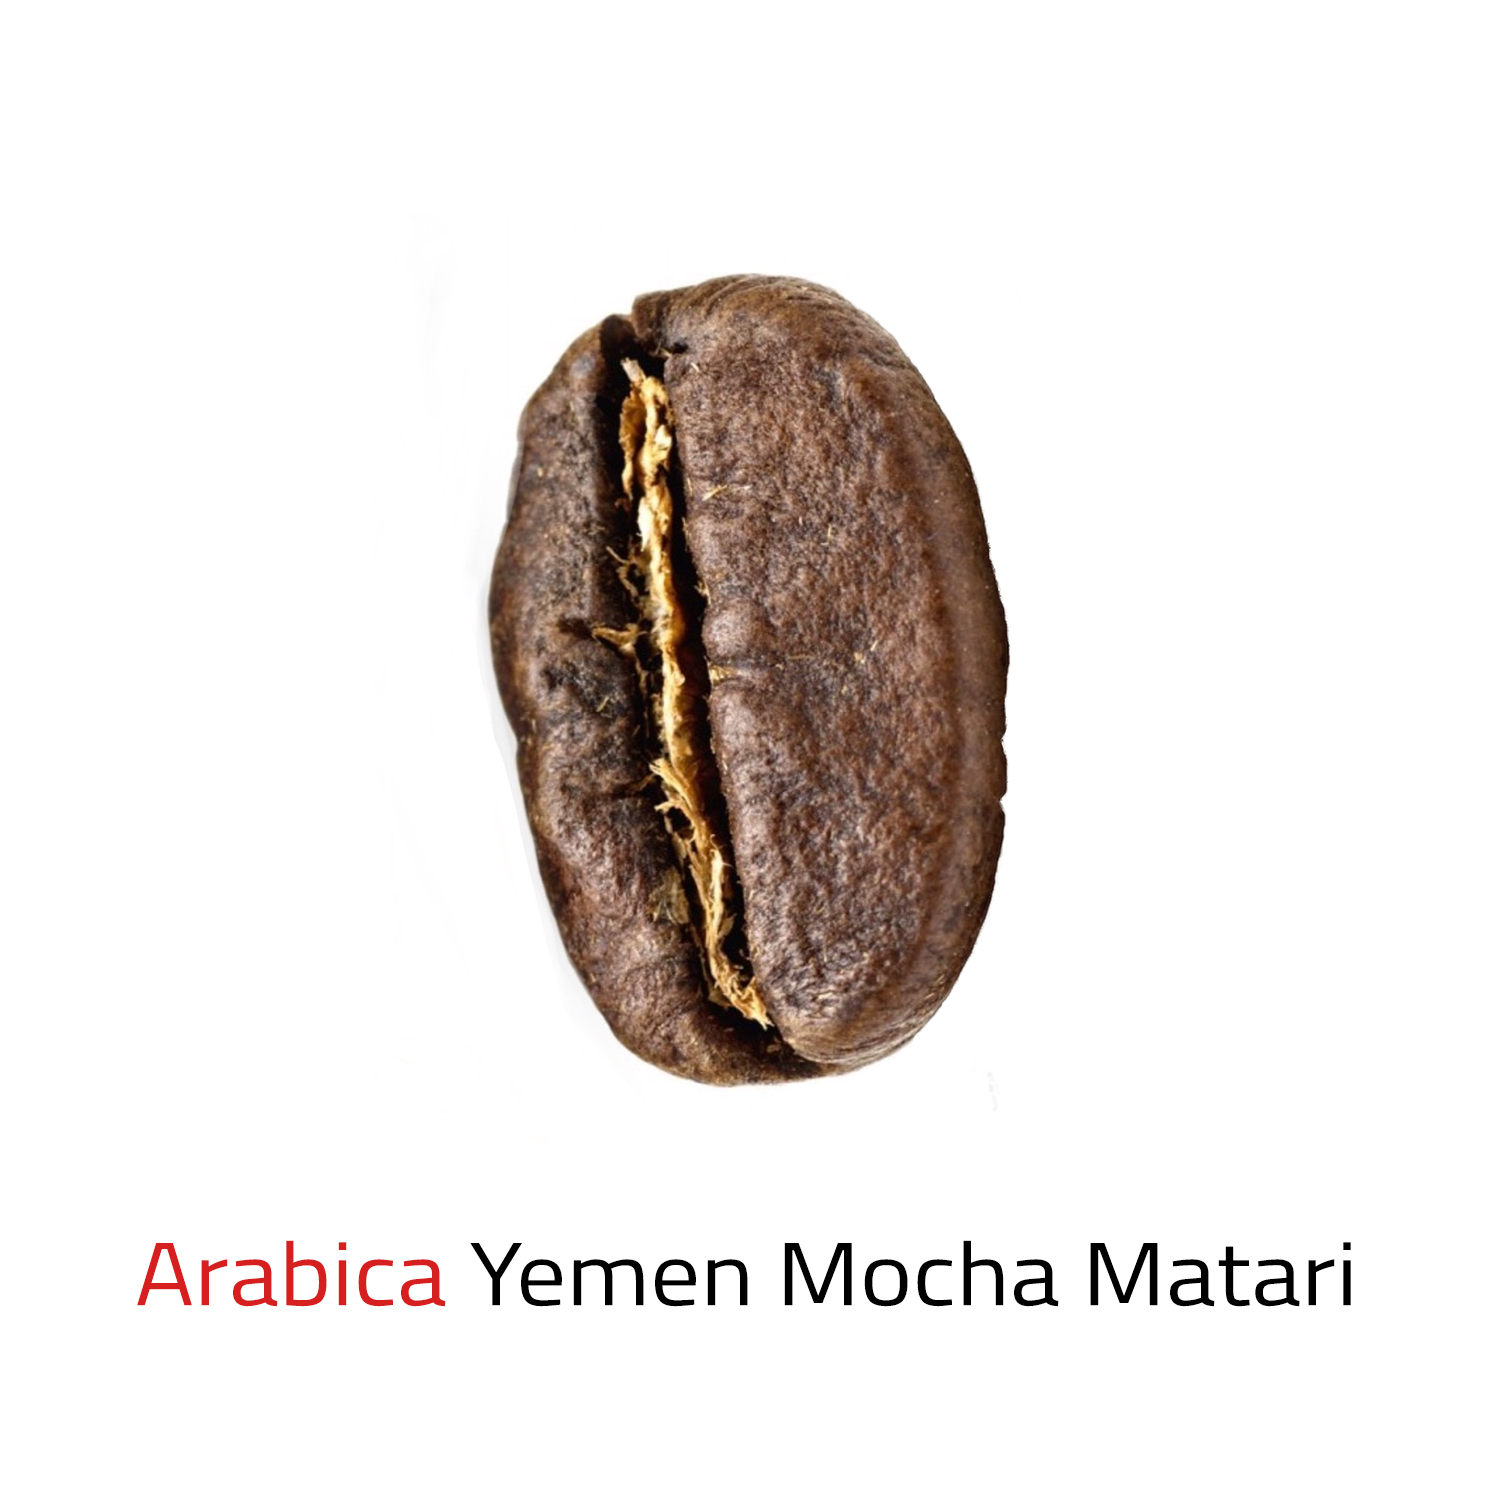 Čerstvě pražená káva zrnková Yemen Mocha Matari 